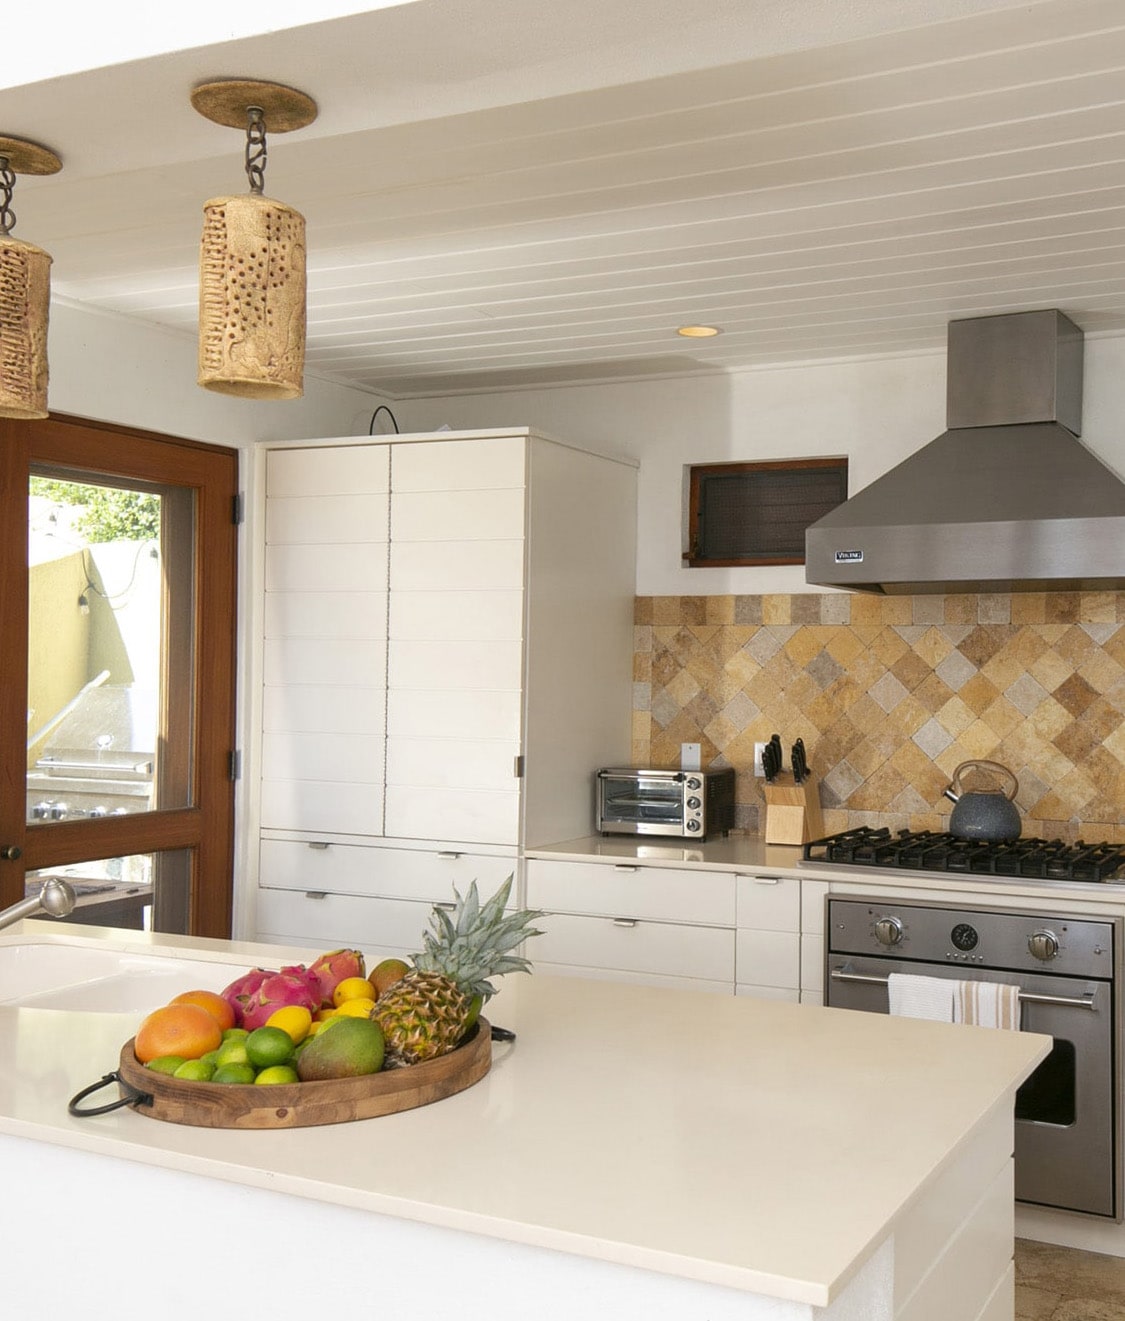 Lovango Bay Indoor Modern Kitchen Virgin Islands Destination